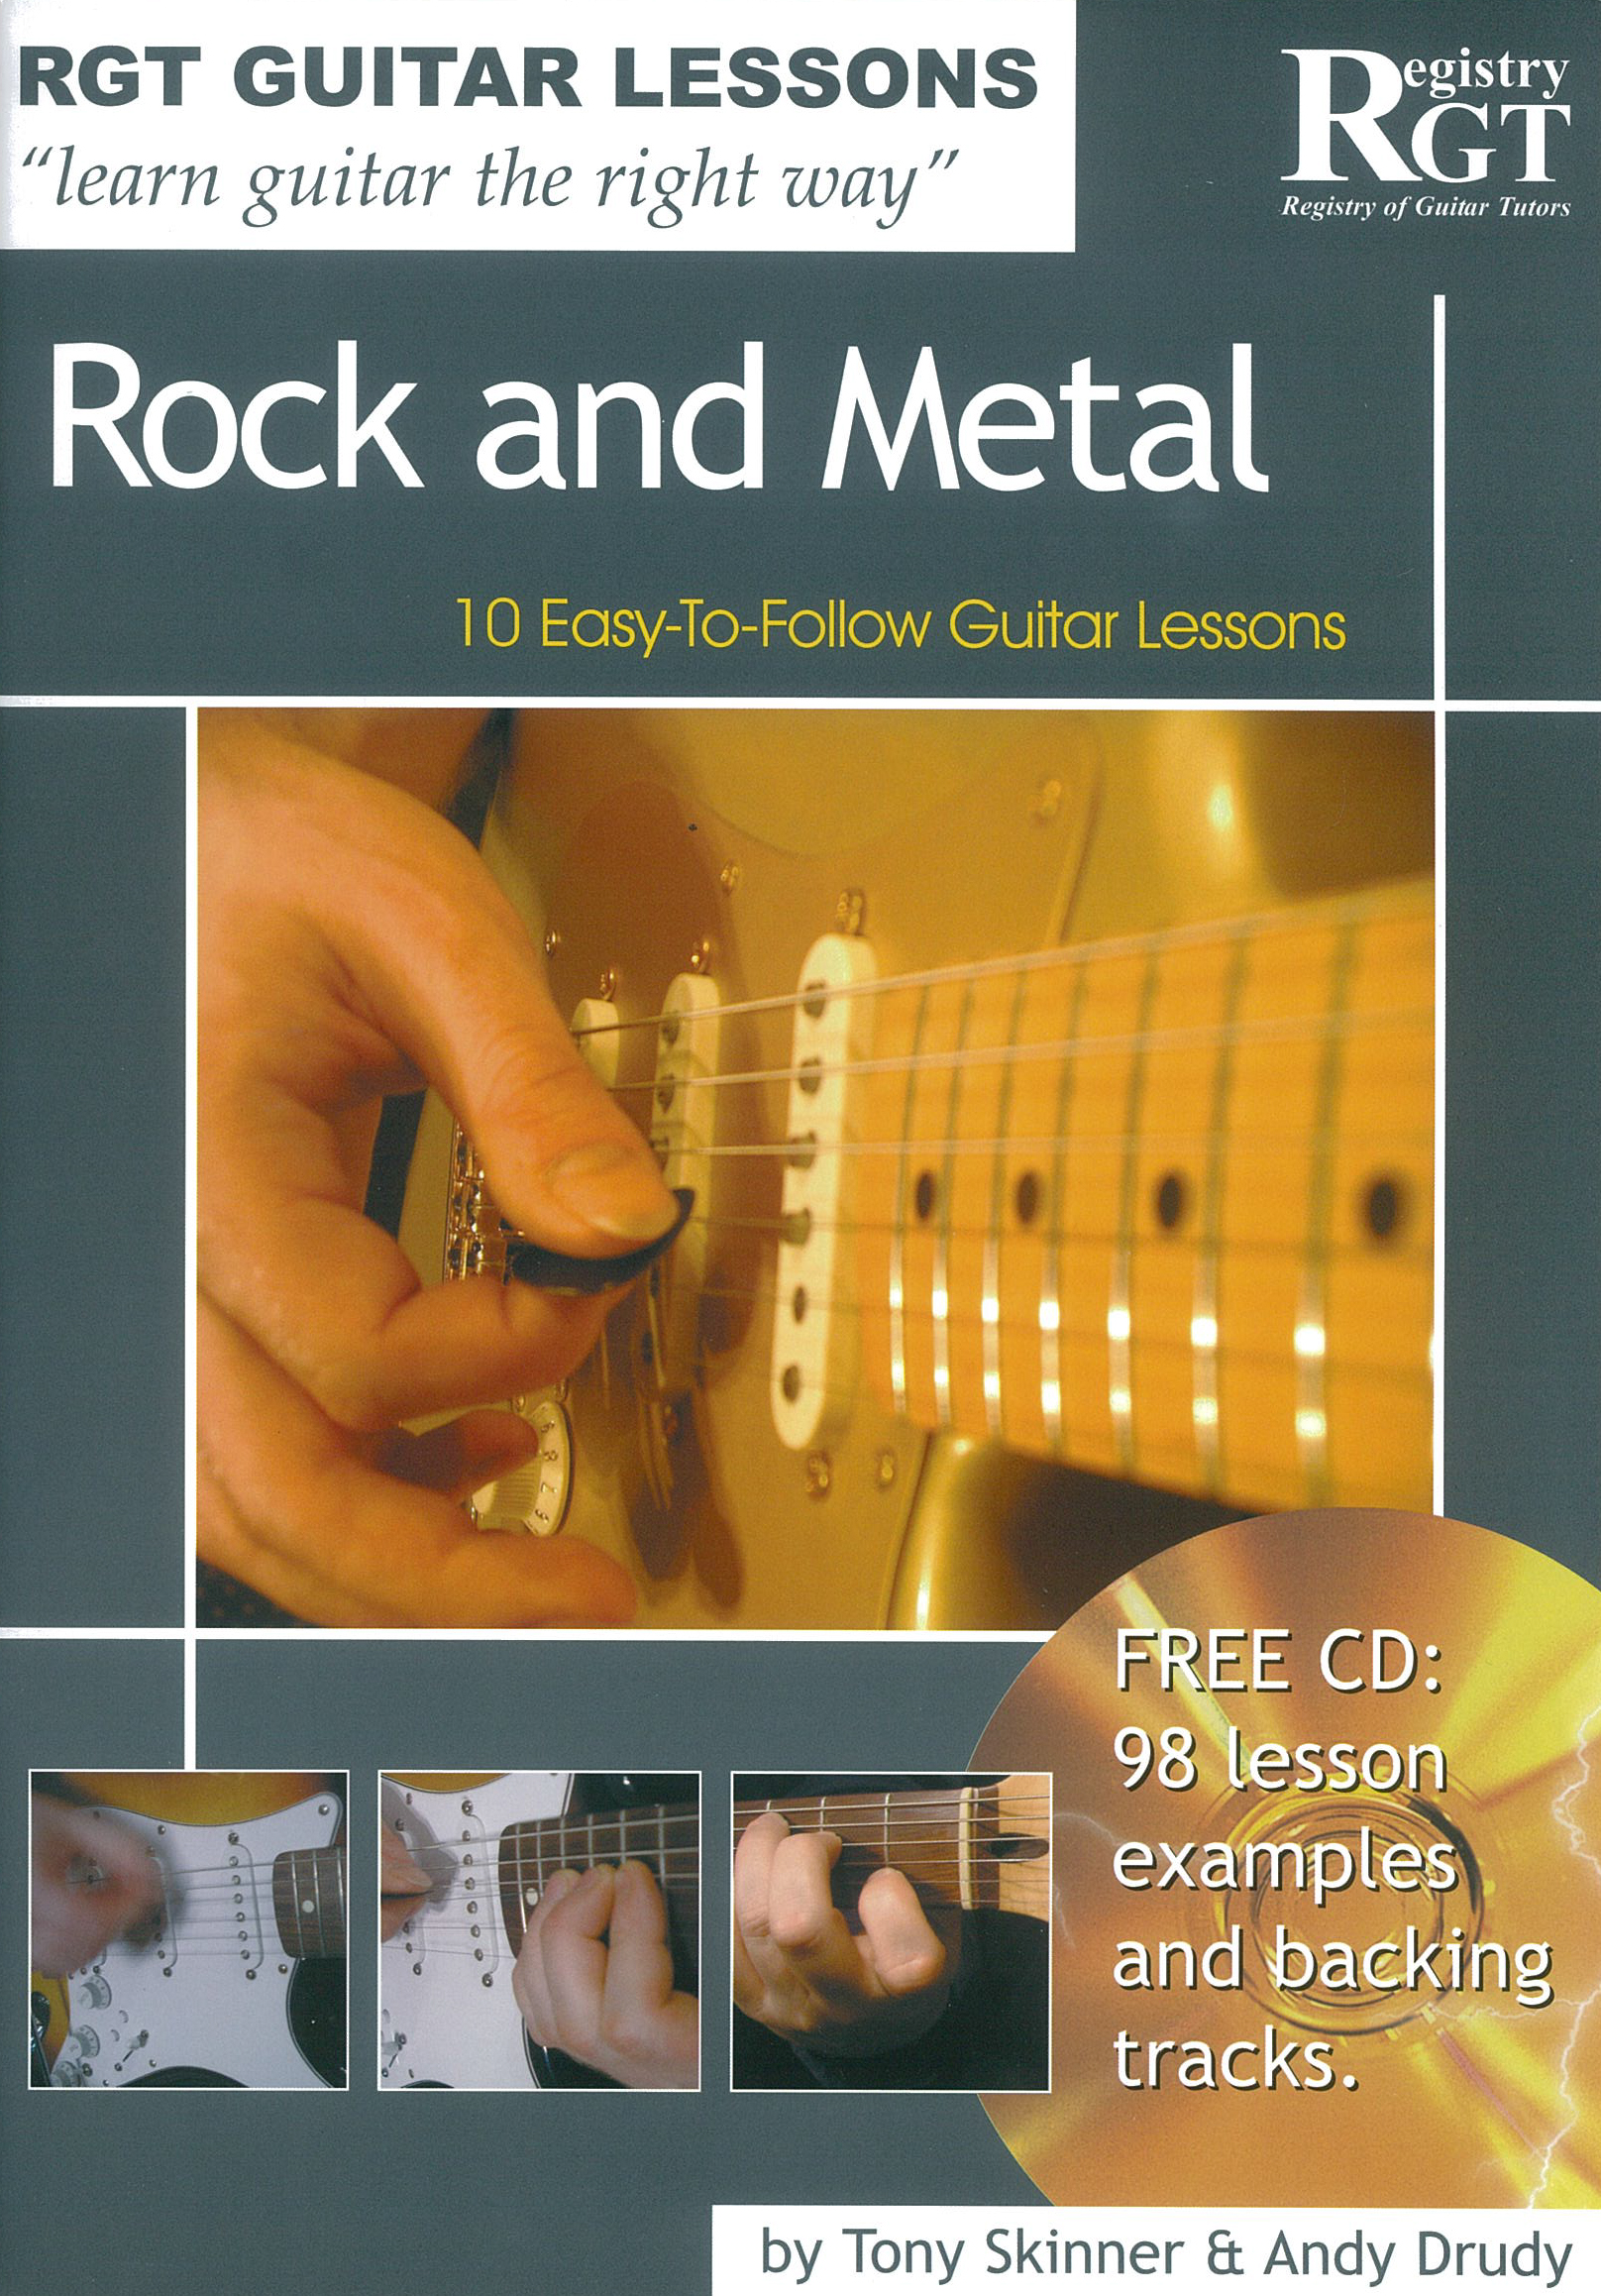 Tony Skinner: Rgt Guitar Lessons Rock and Metal: Guitar: Instrumental Tutor